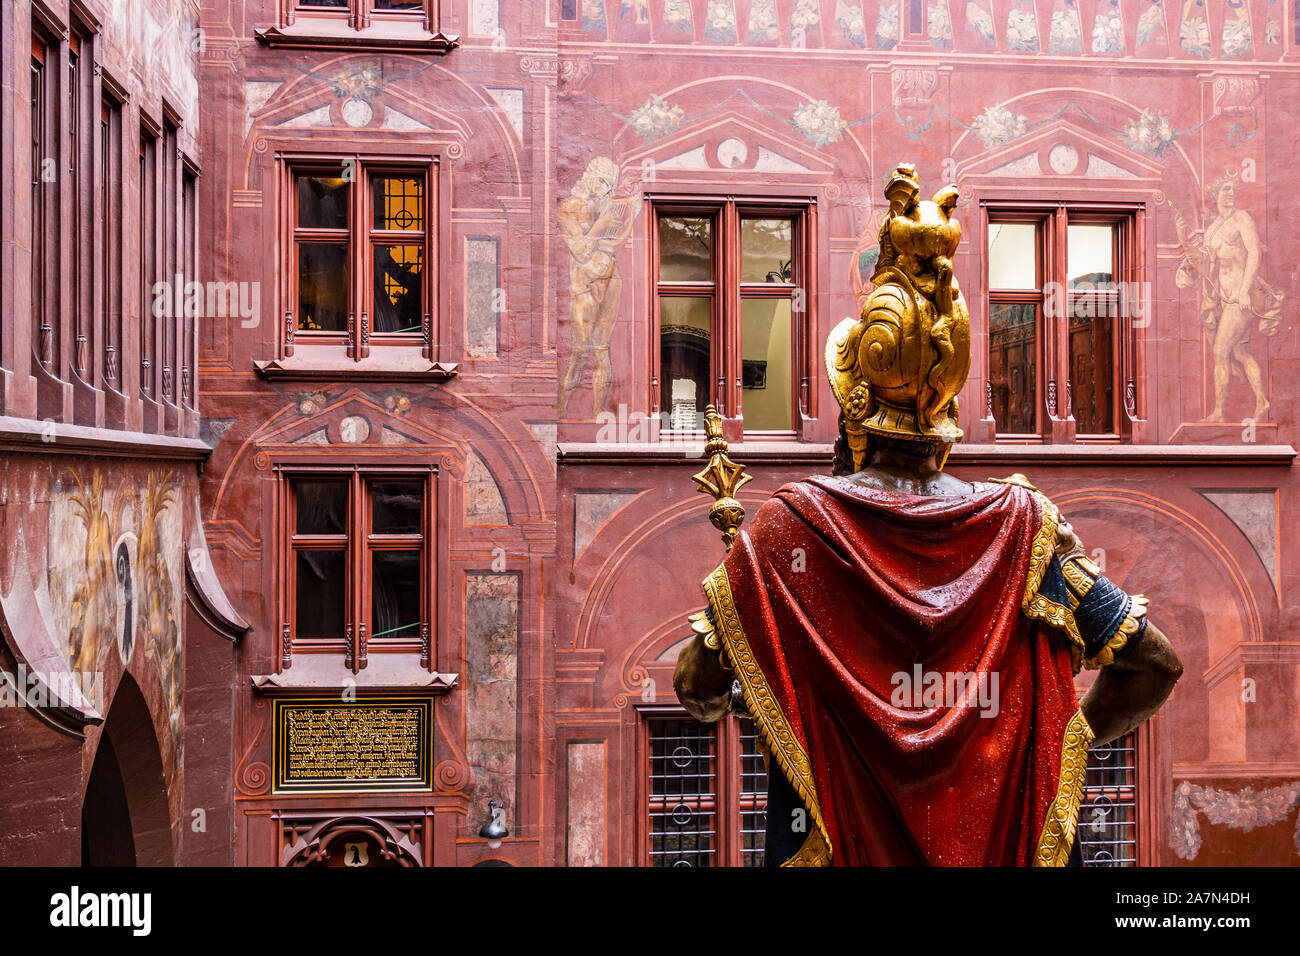 Cour intérieure de l'Hôtel de ville de Bâle, l'hôtel de ville. Bâtiment façade rouge avec des fresques et l'arrière de Lucius Munatius Plancus statue. La Suisse. Banque D'Images